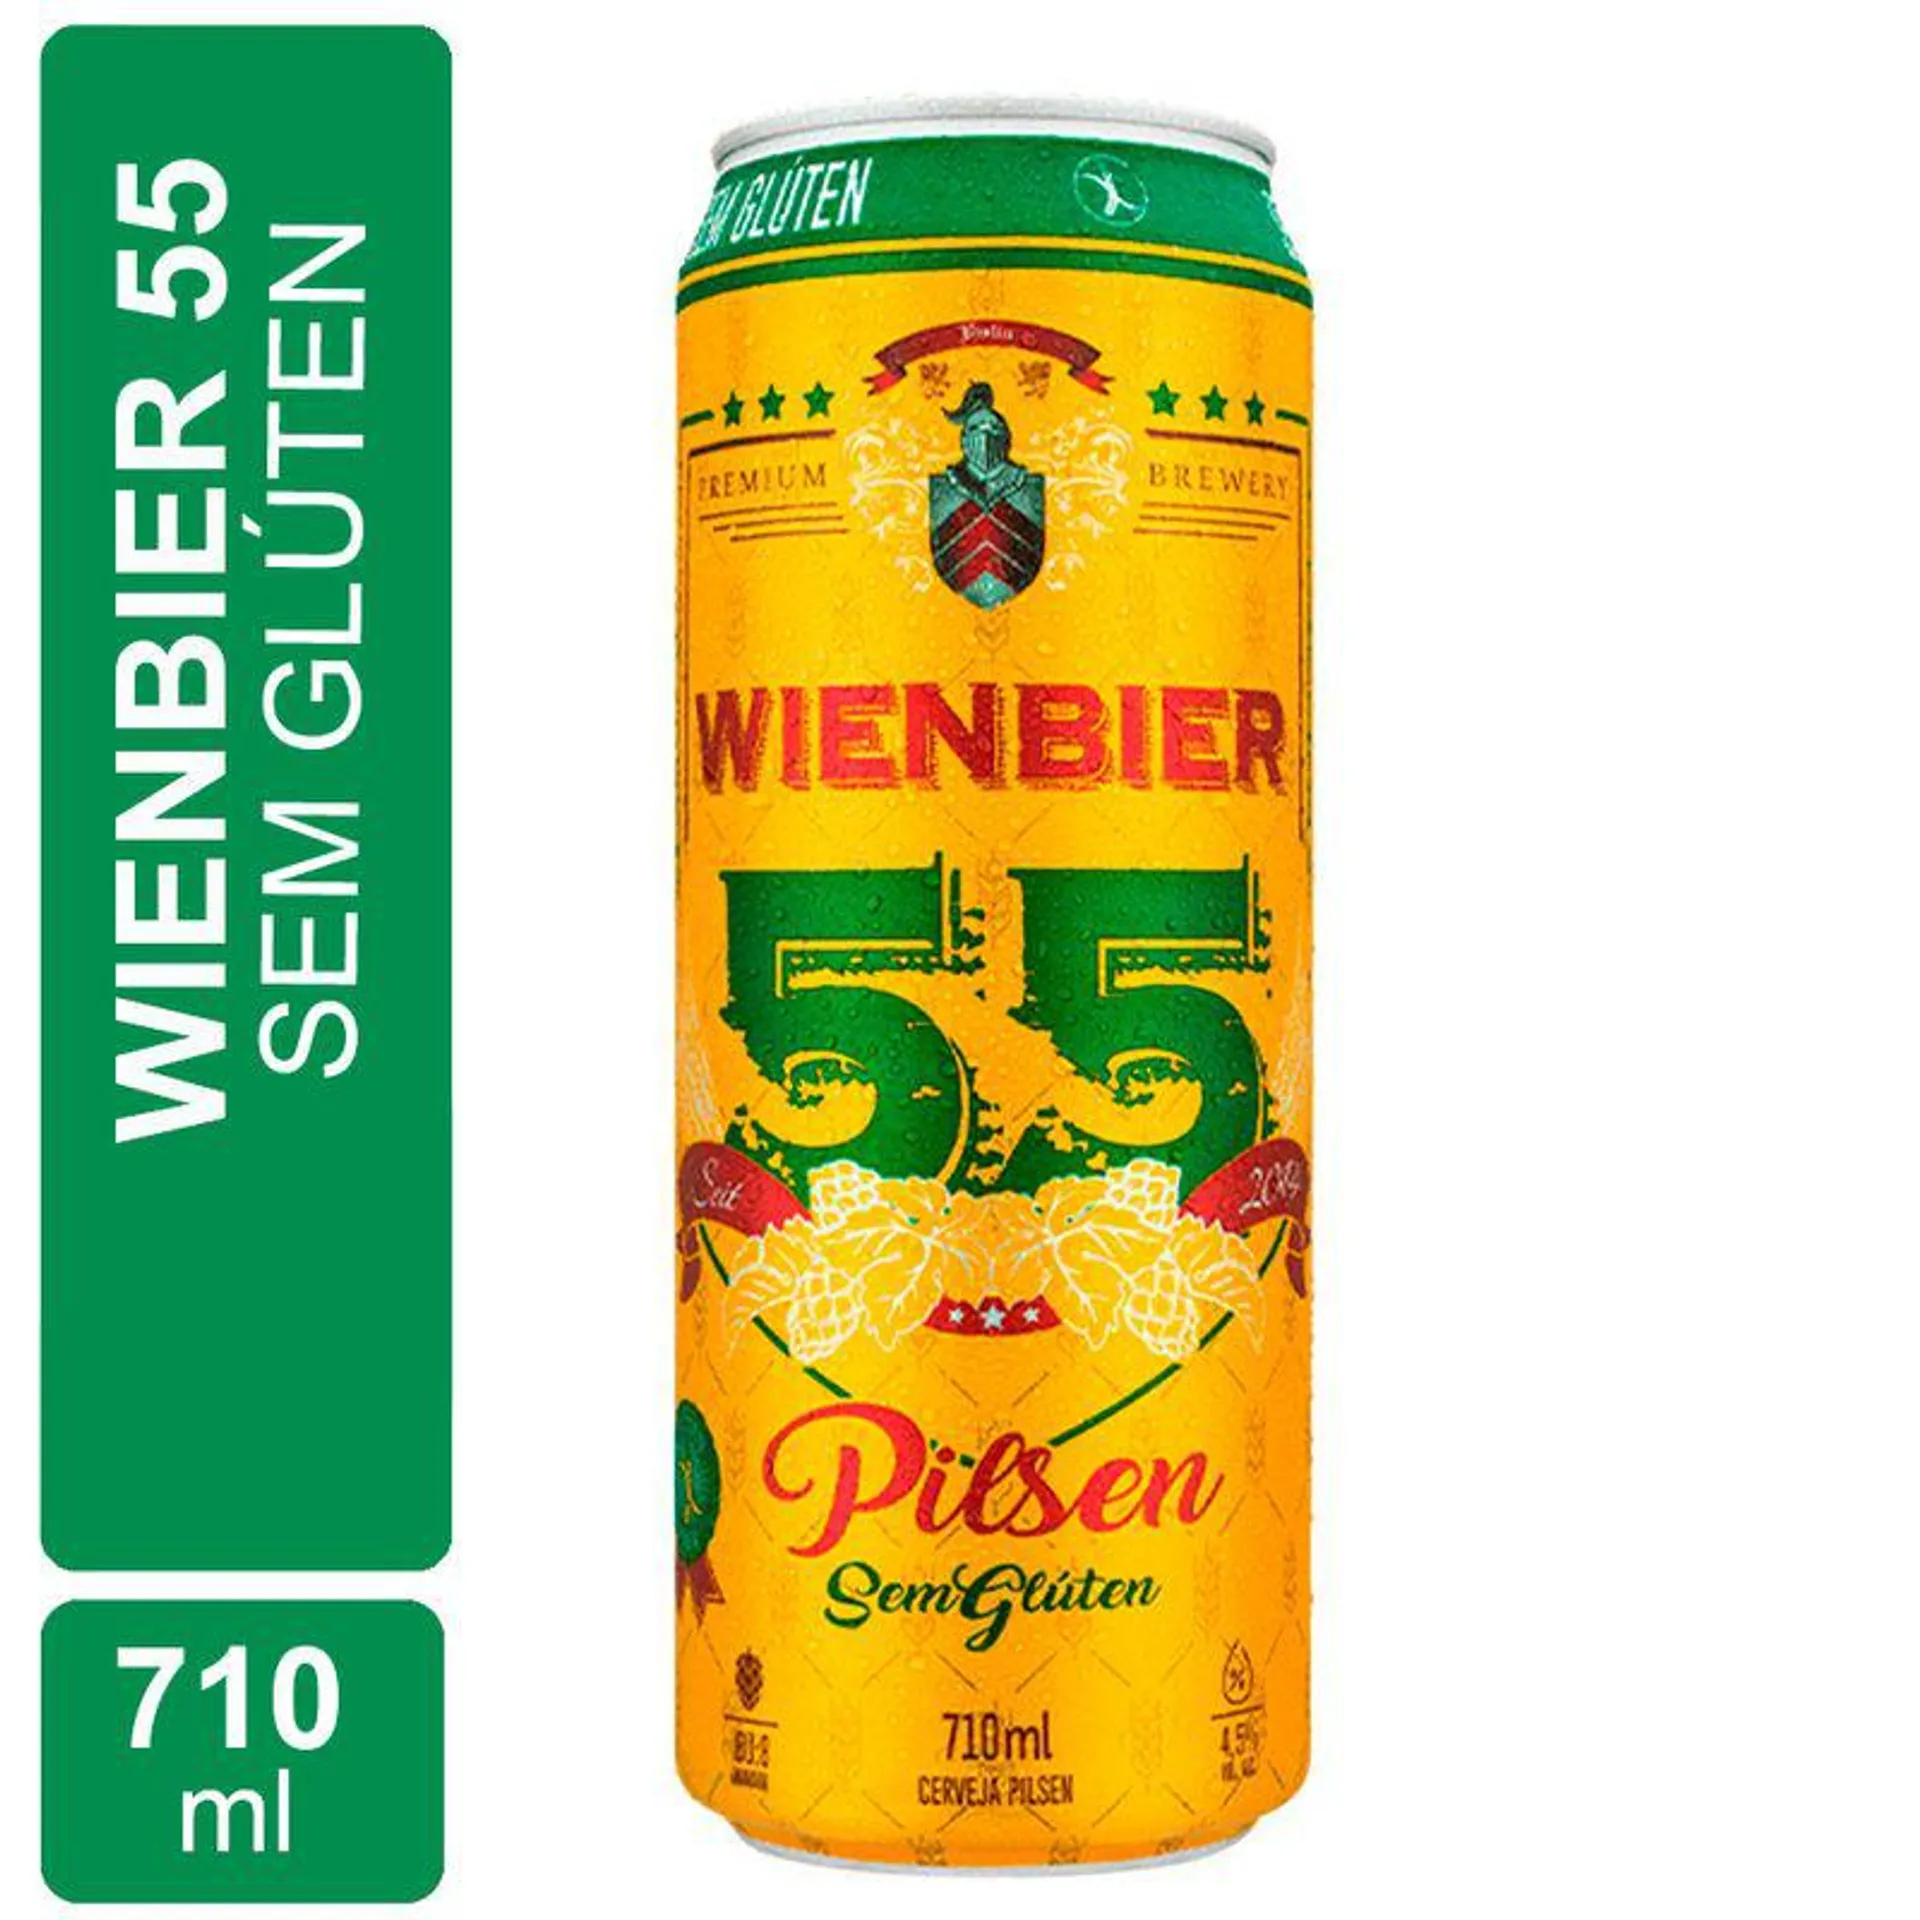 Cerveja Wienbier 55 Pilsen s/ Glúten Lata 710ml